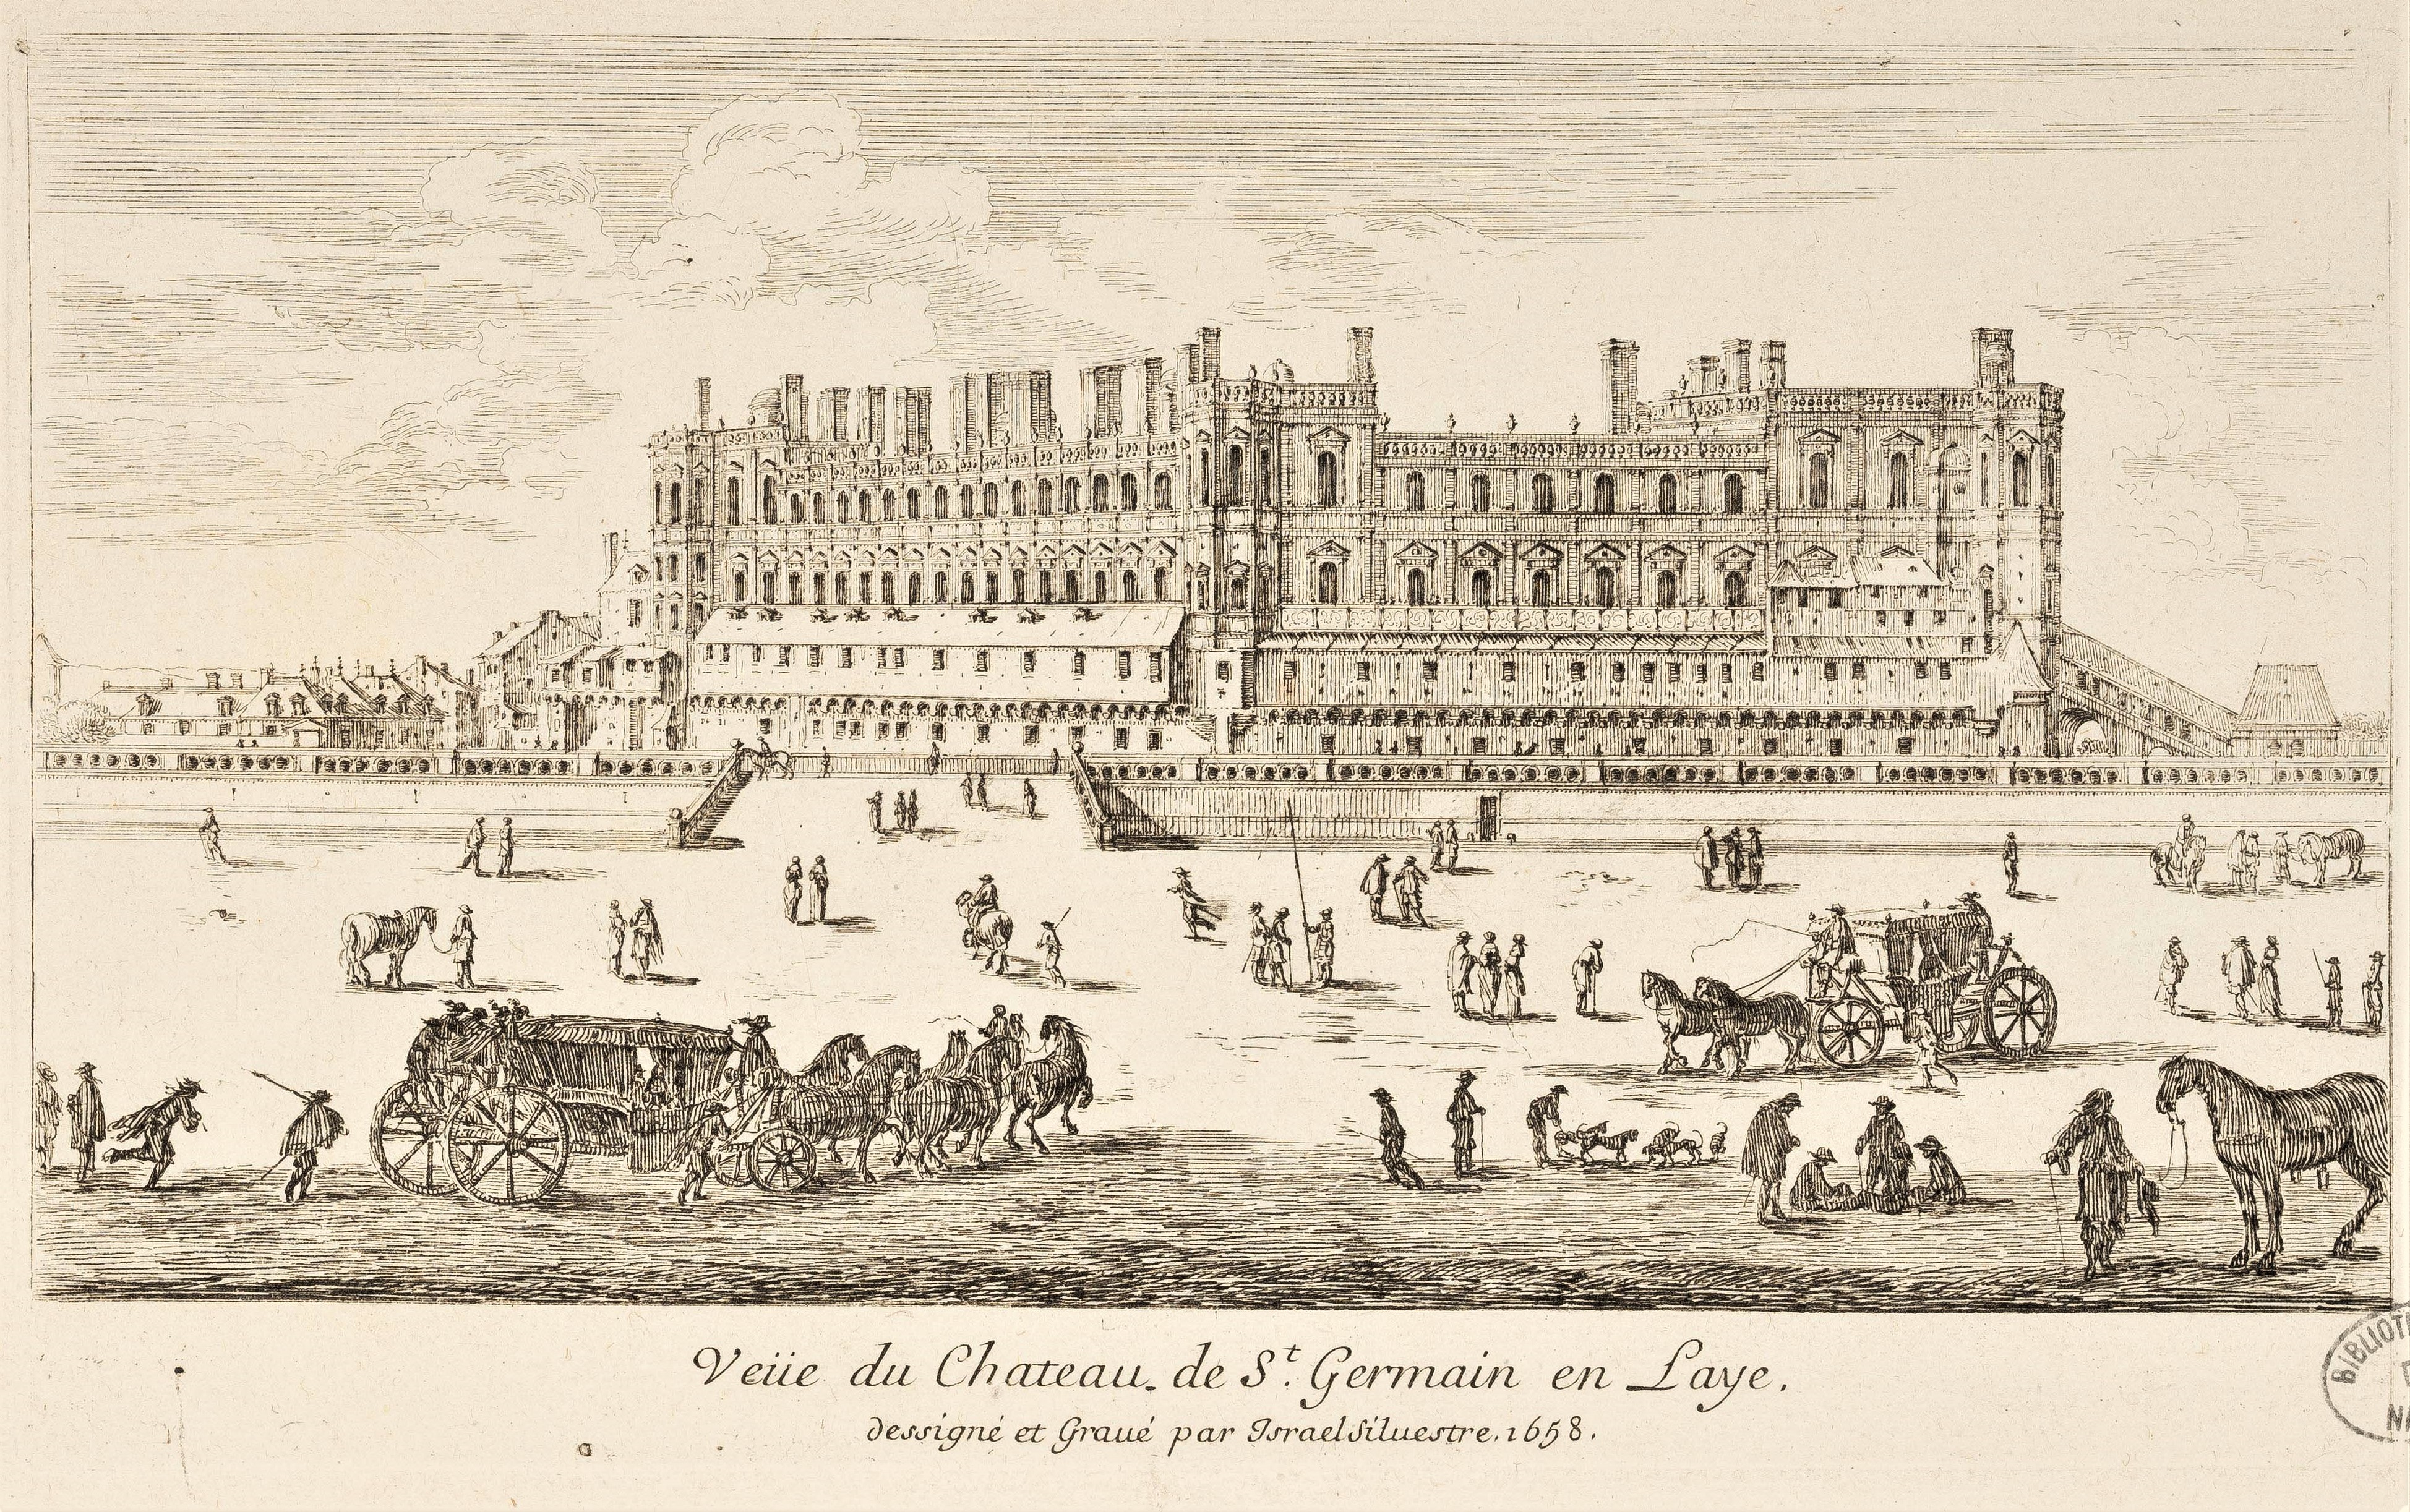 Israël Silvestre : Veüe du Chateau de S.t Germain en Laye.